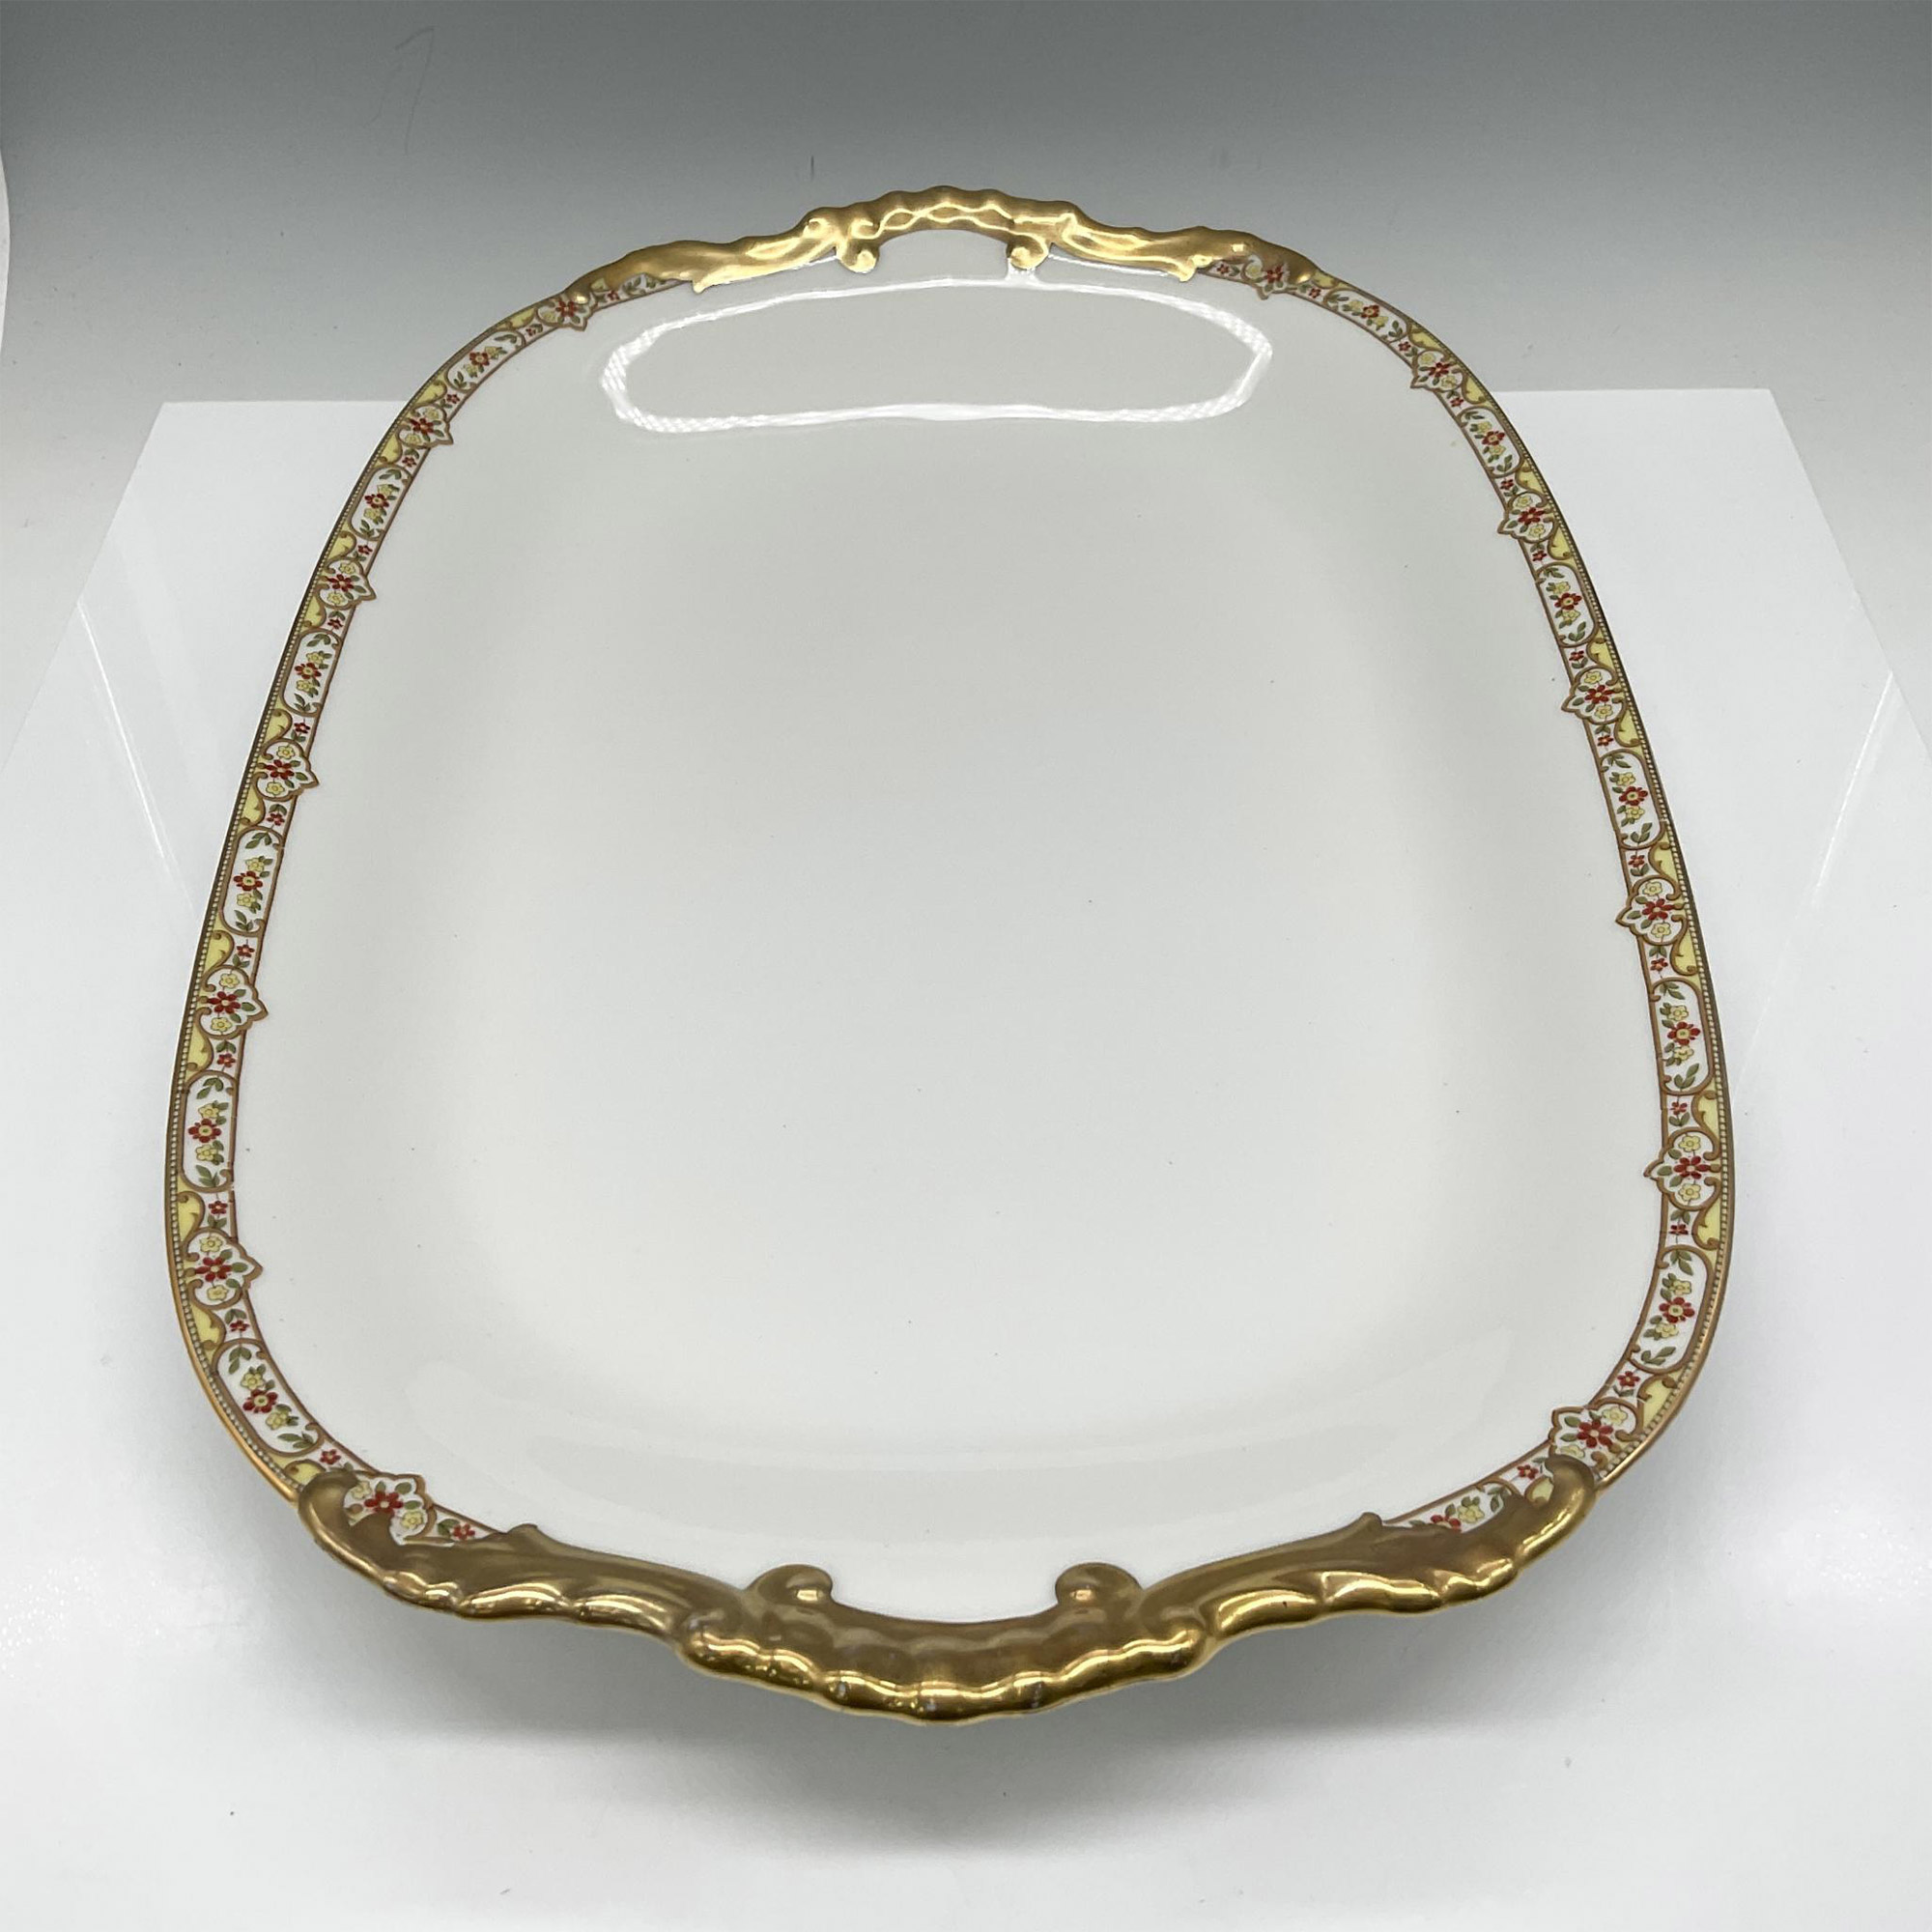 Limoges Vignaud Porcelain Serveware, Large Oval Platter - Image 2 of 3